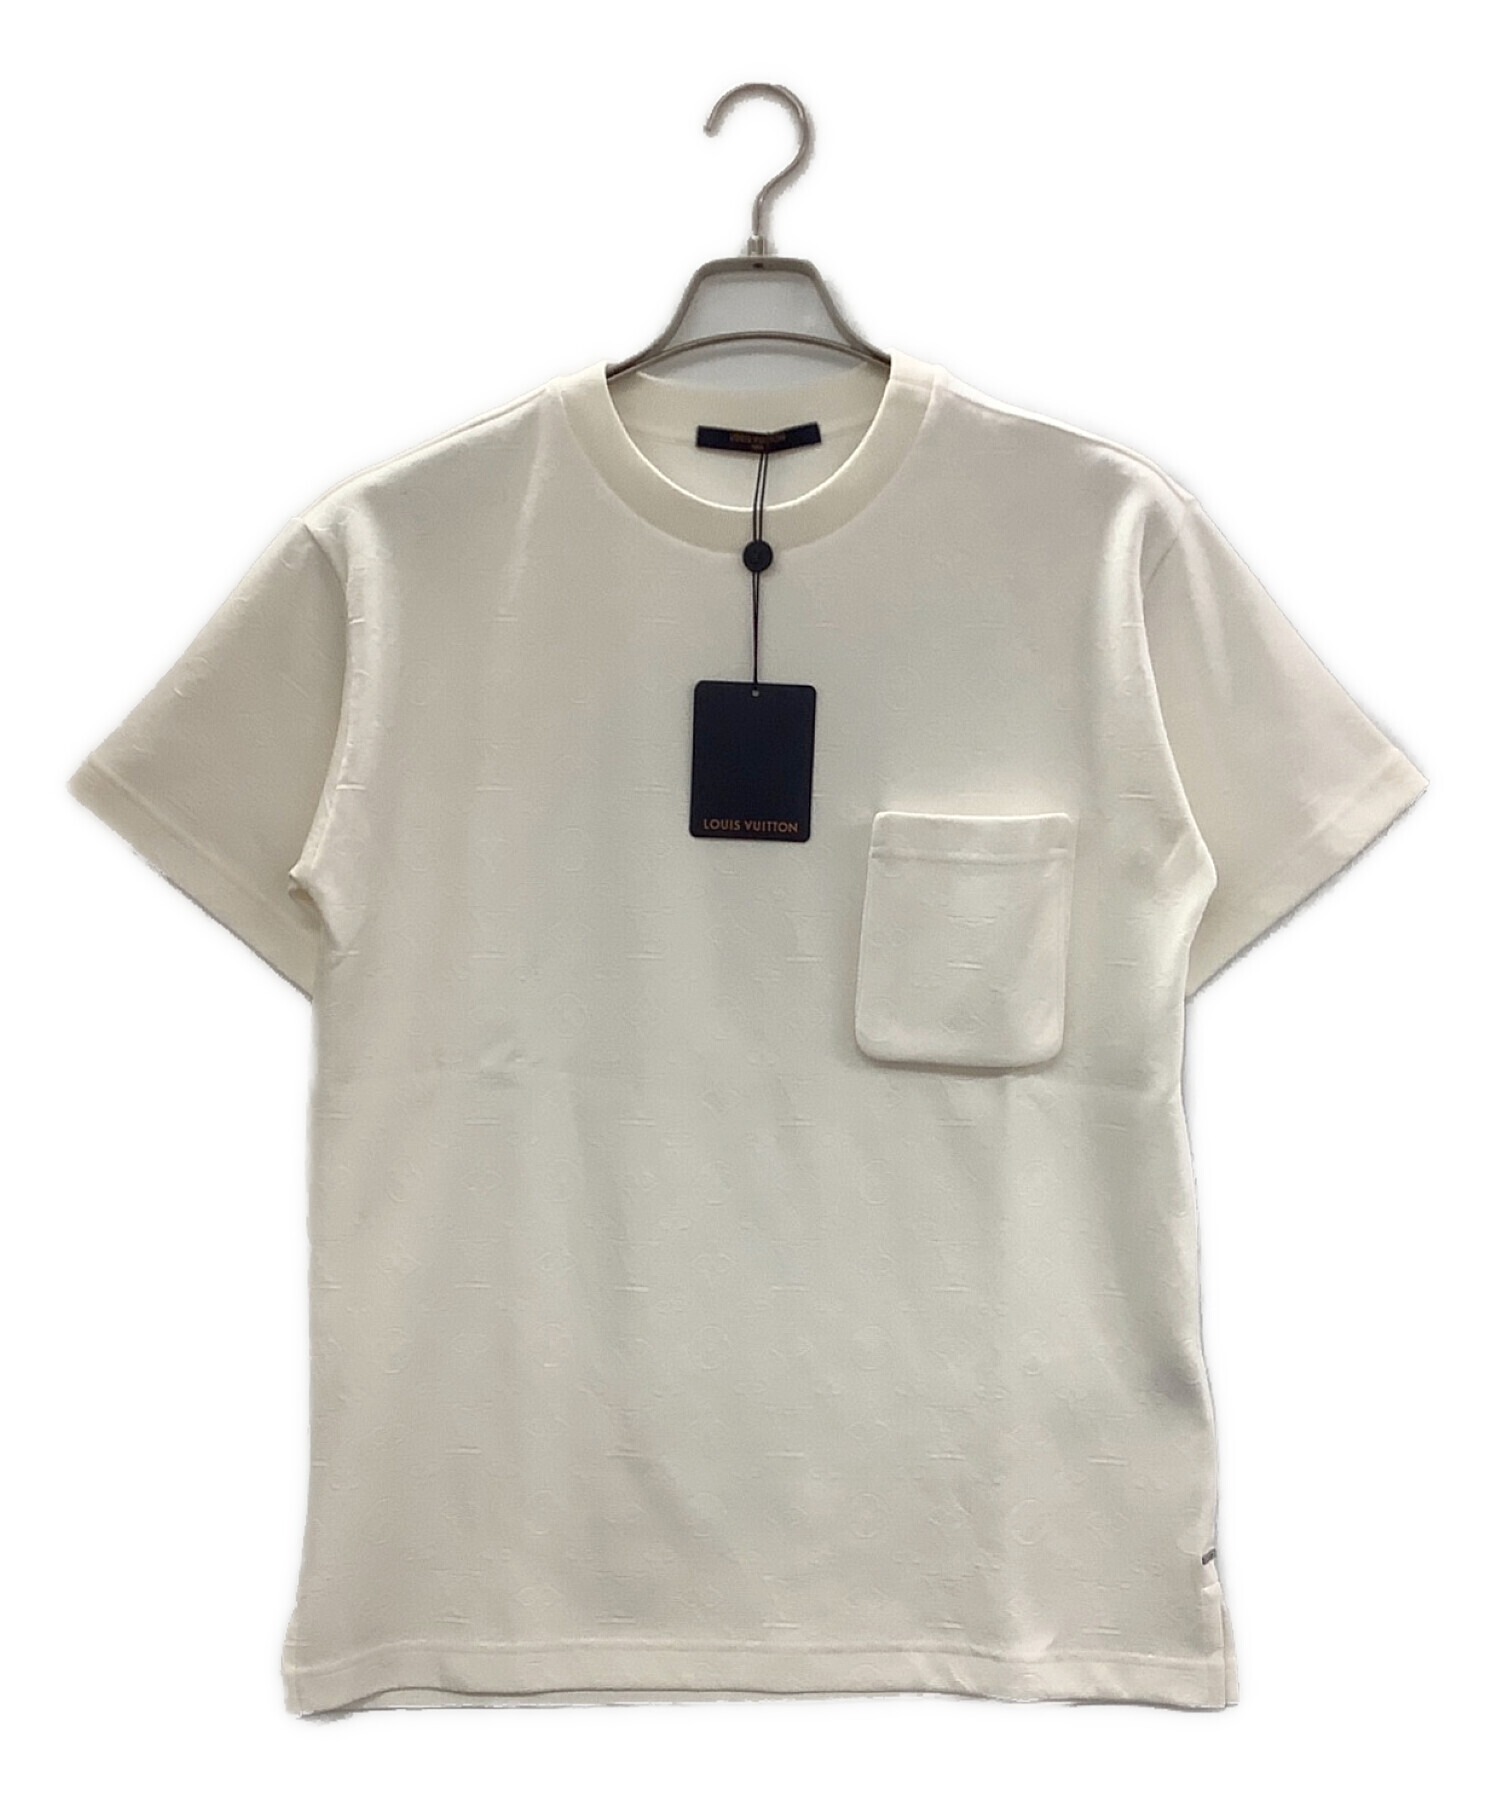 LOUIS VUITTON (ルイ ヴィトン) 3DモノグラムポケットTシャツ ホワイト サイズ:XS